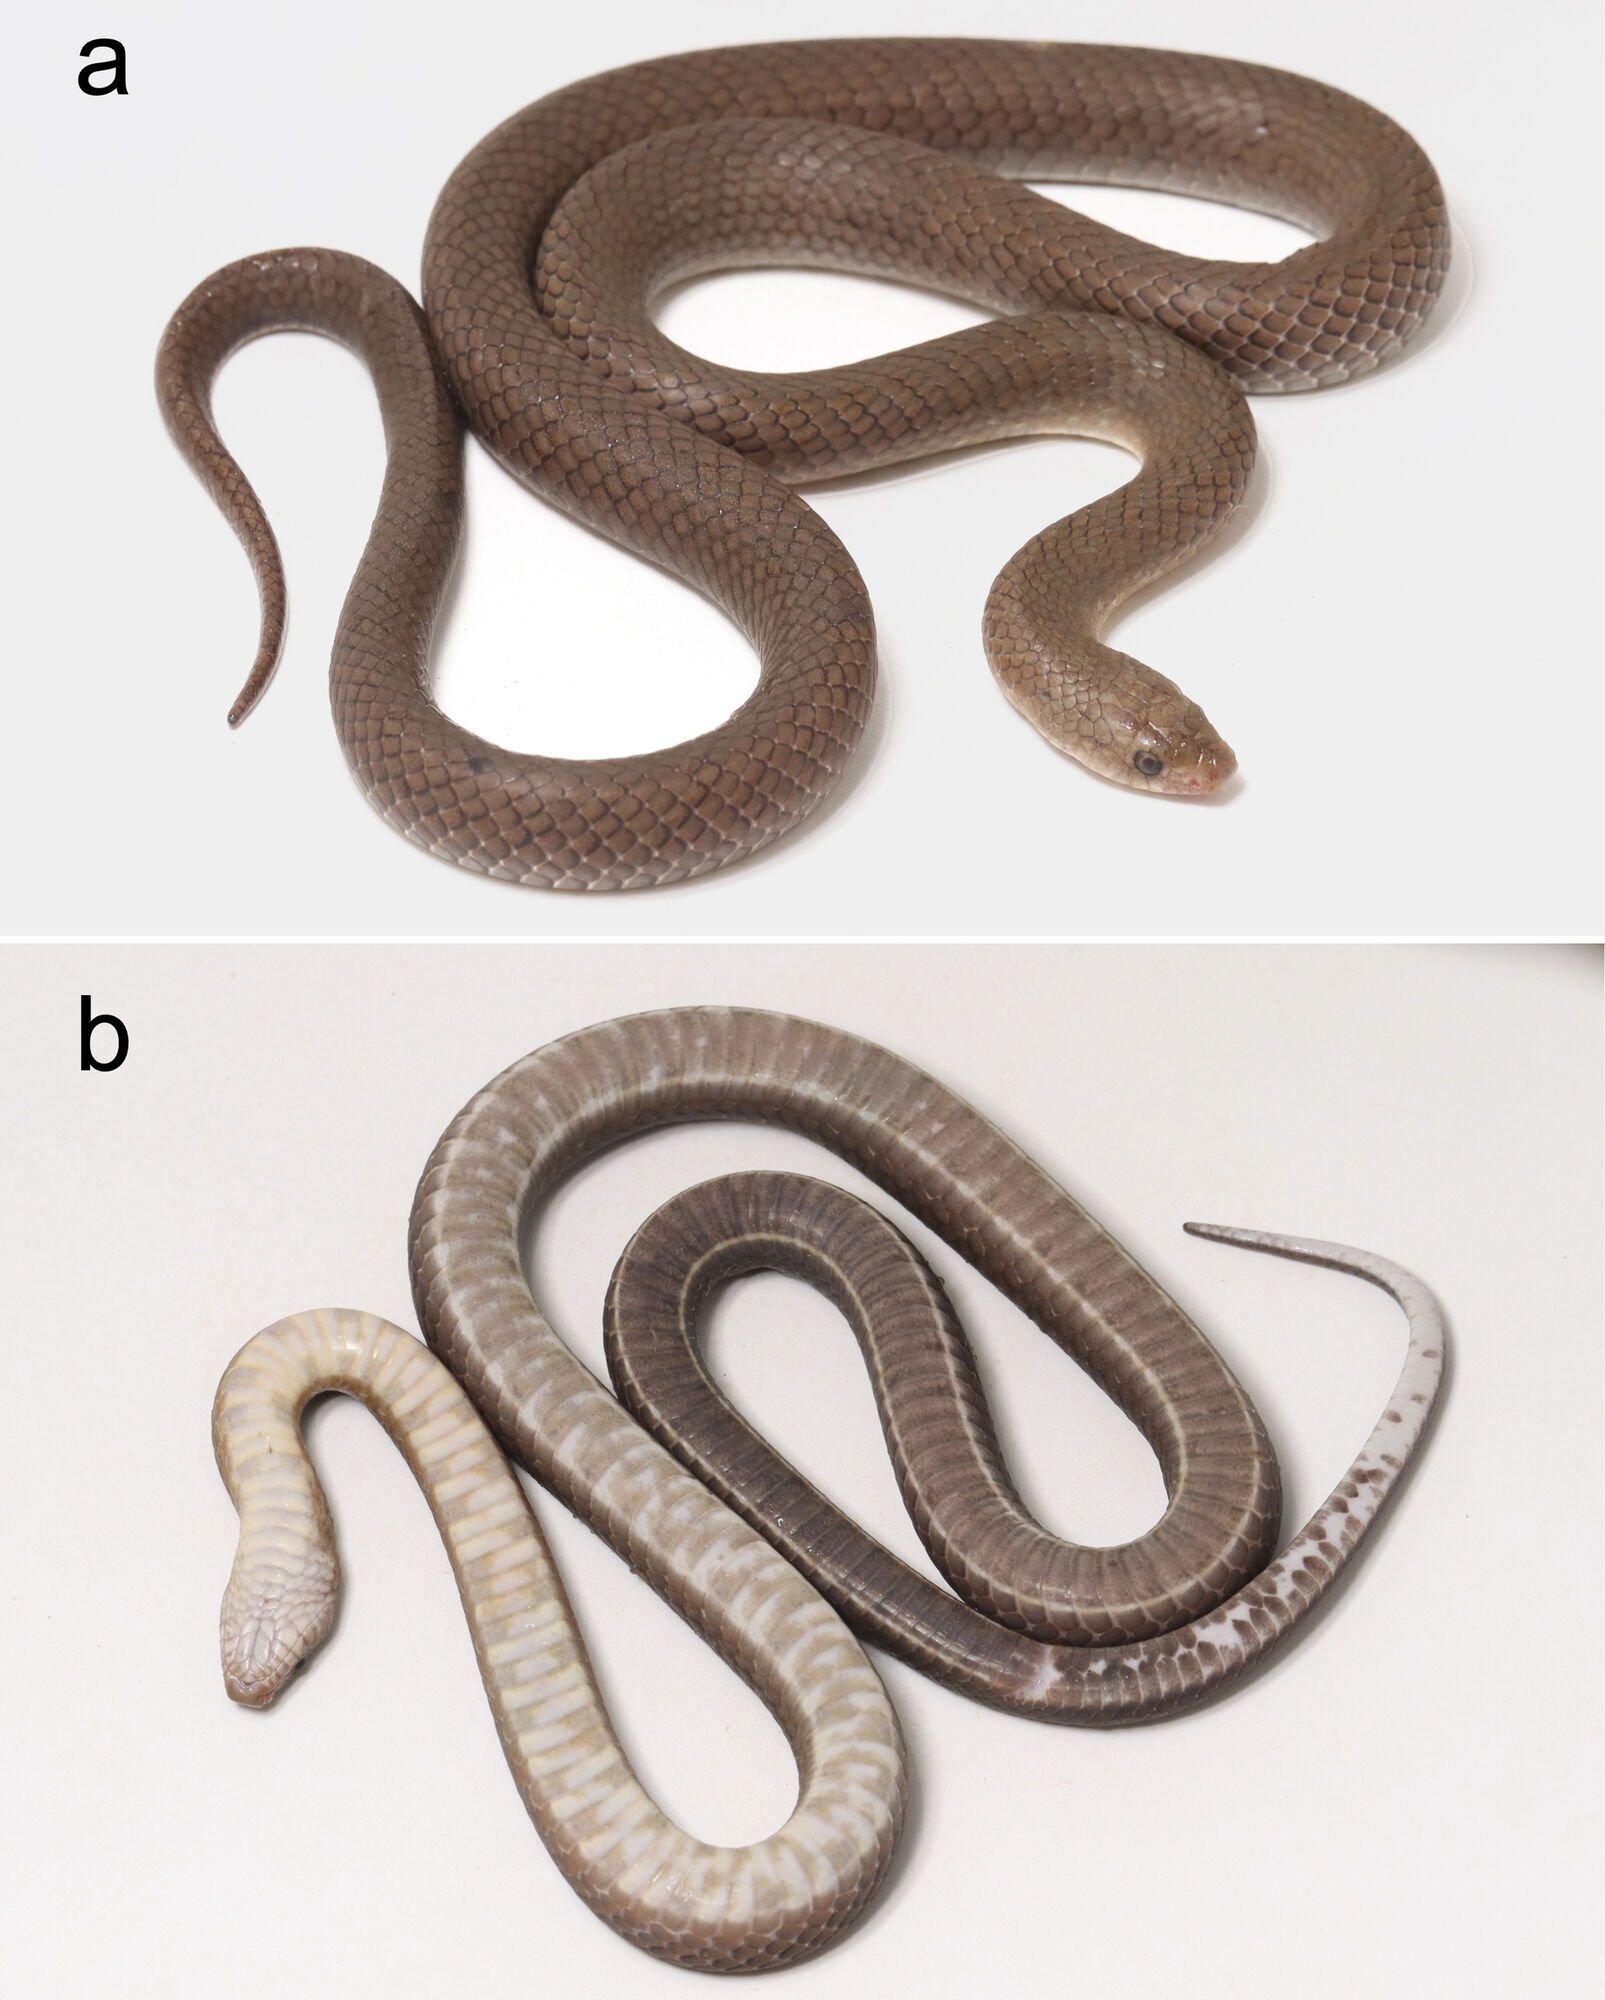 Новый вид змей обнаружили в Таиланде: имеют клыки, похожие на лезвия (фото)